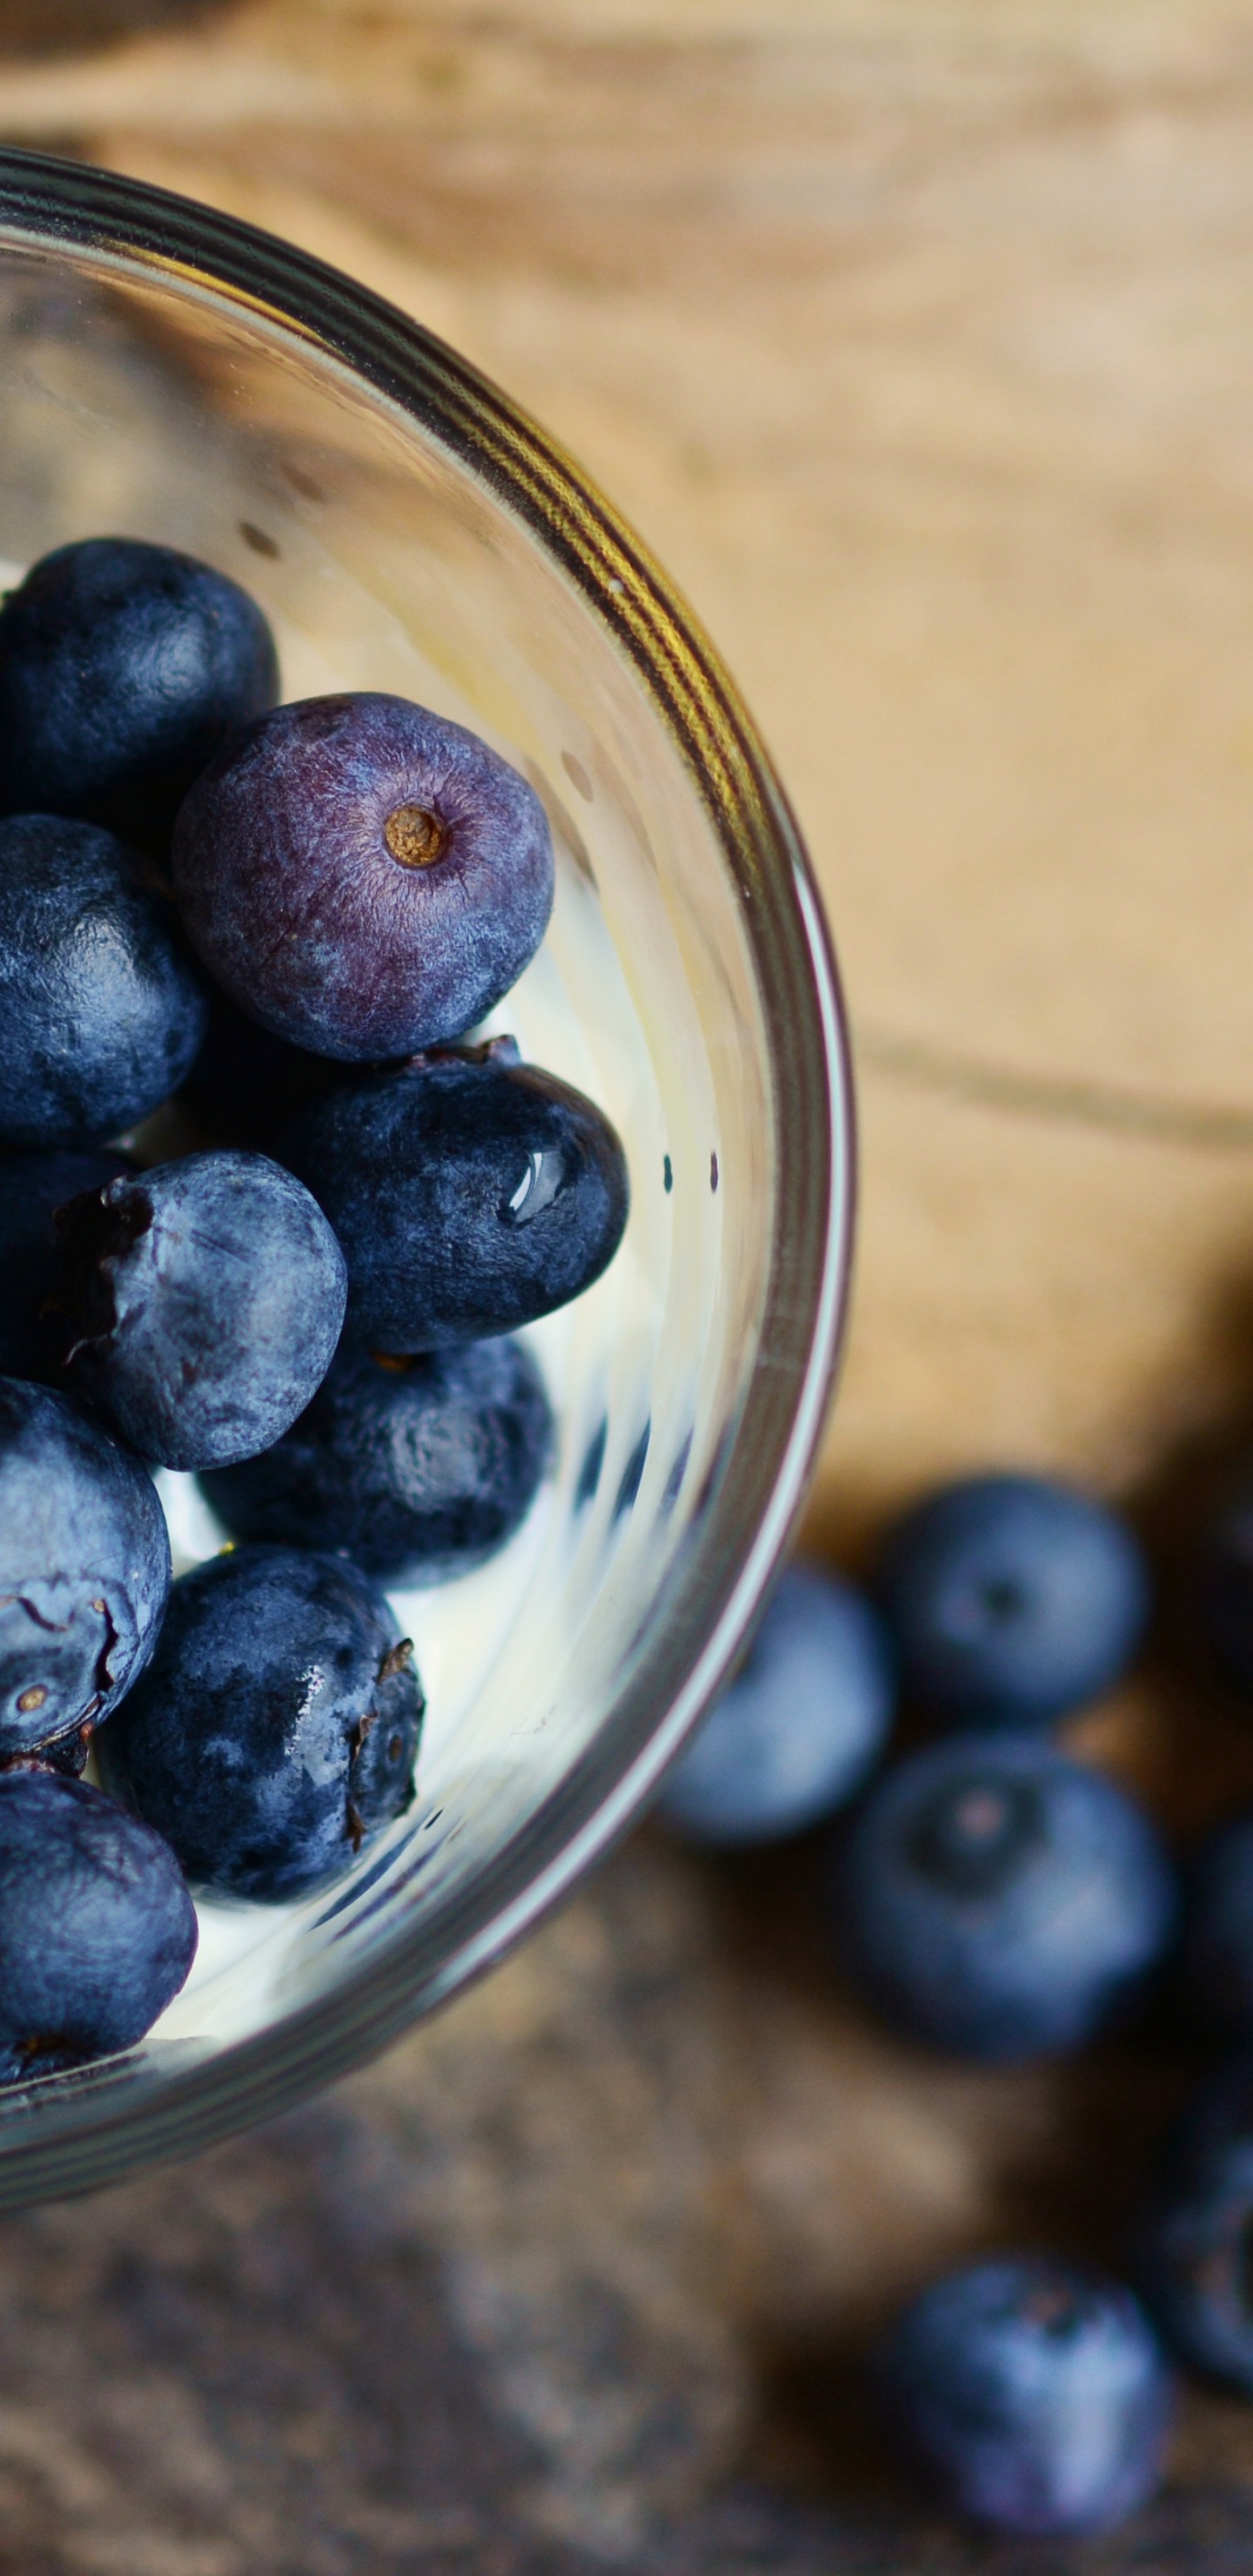 蓝莓, 食品, 梅斯皮诺亚, 营养, 健康 壁纸 1440x2960 允许